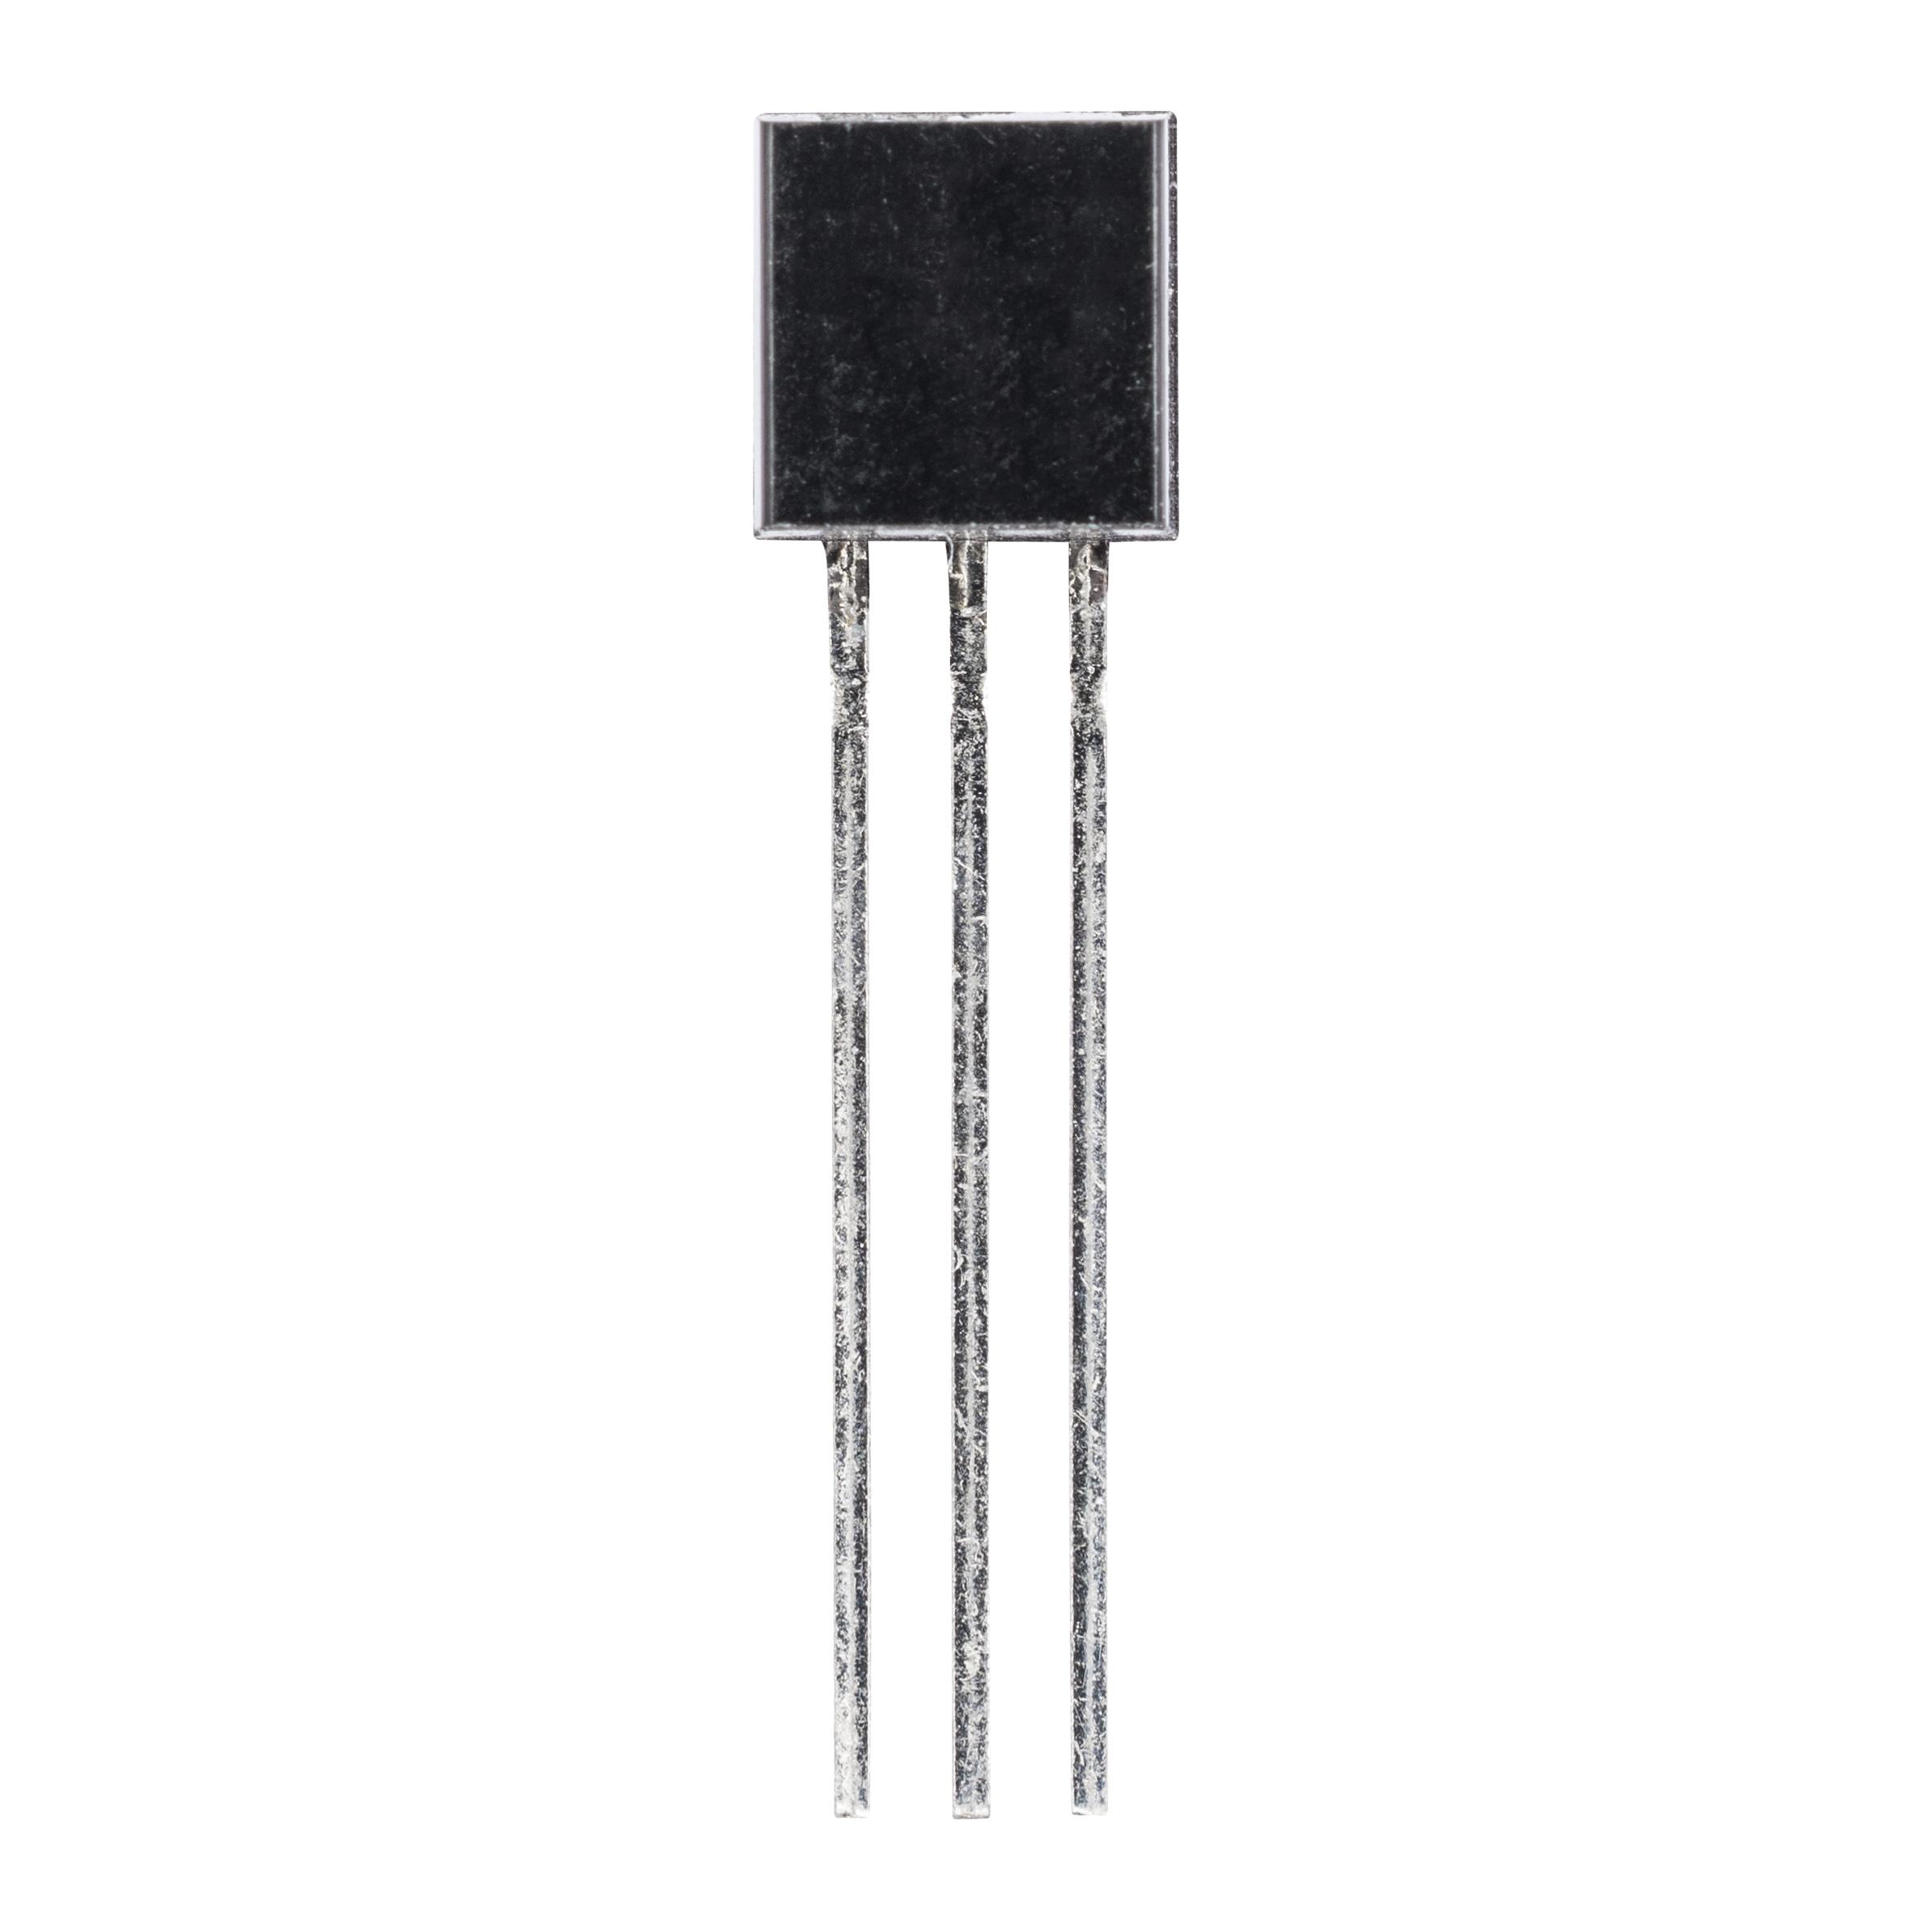 2N5551 (транзистор биполярный NPN)